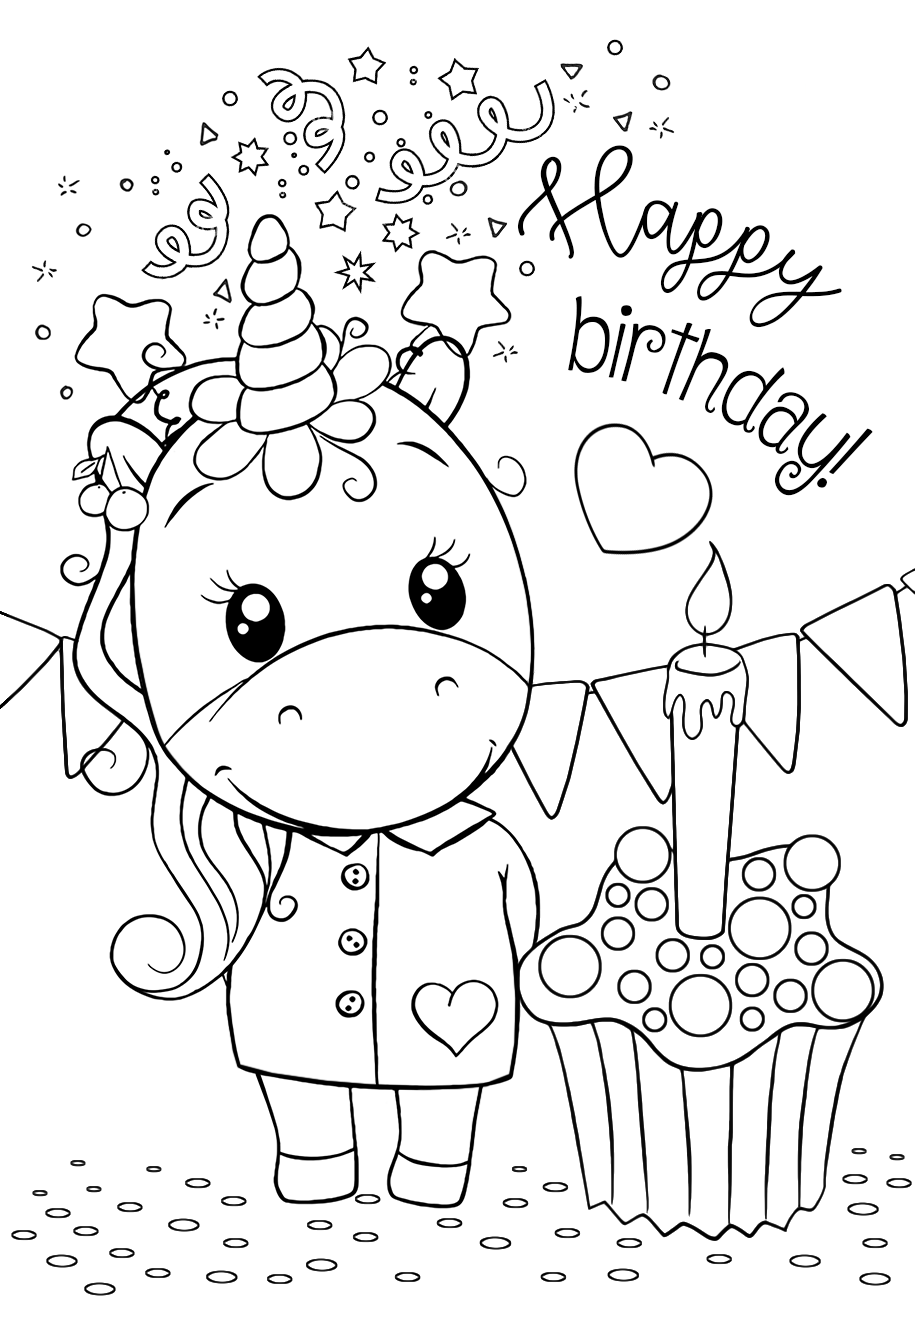 Рисунок на день рождения распечатать. Раскраска "с днем рождения!". День рождения ИА раскраска. Снём рождения раскраска. Раскраска надинрошдения.